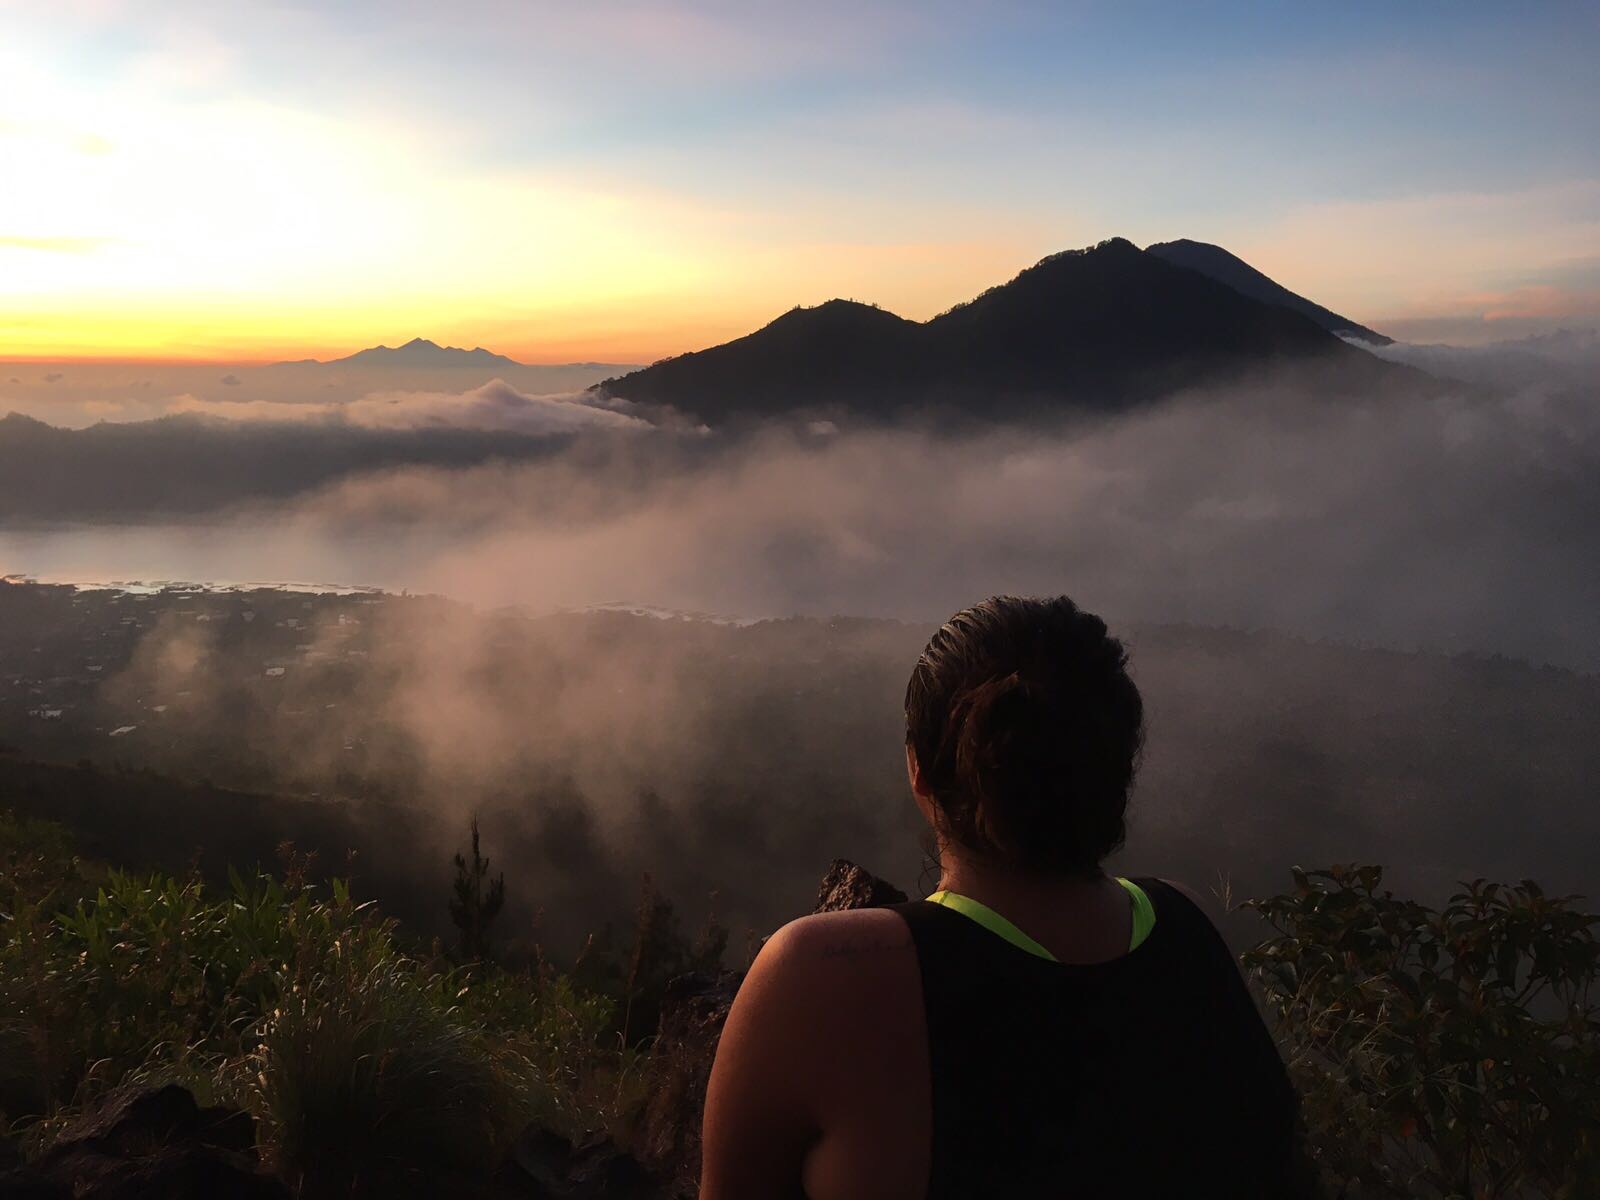 Sunrise at Mount Batur